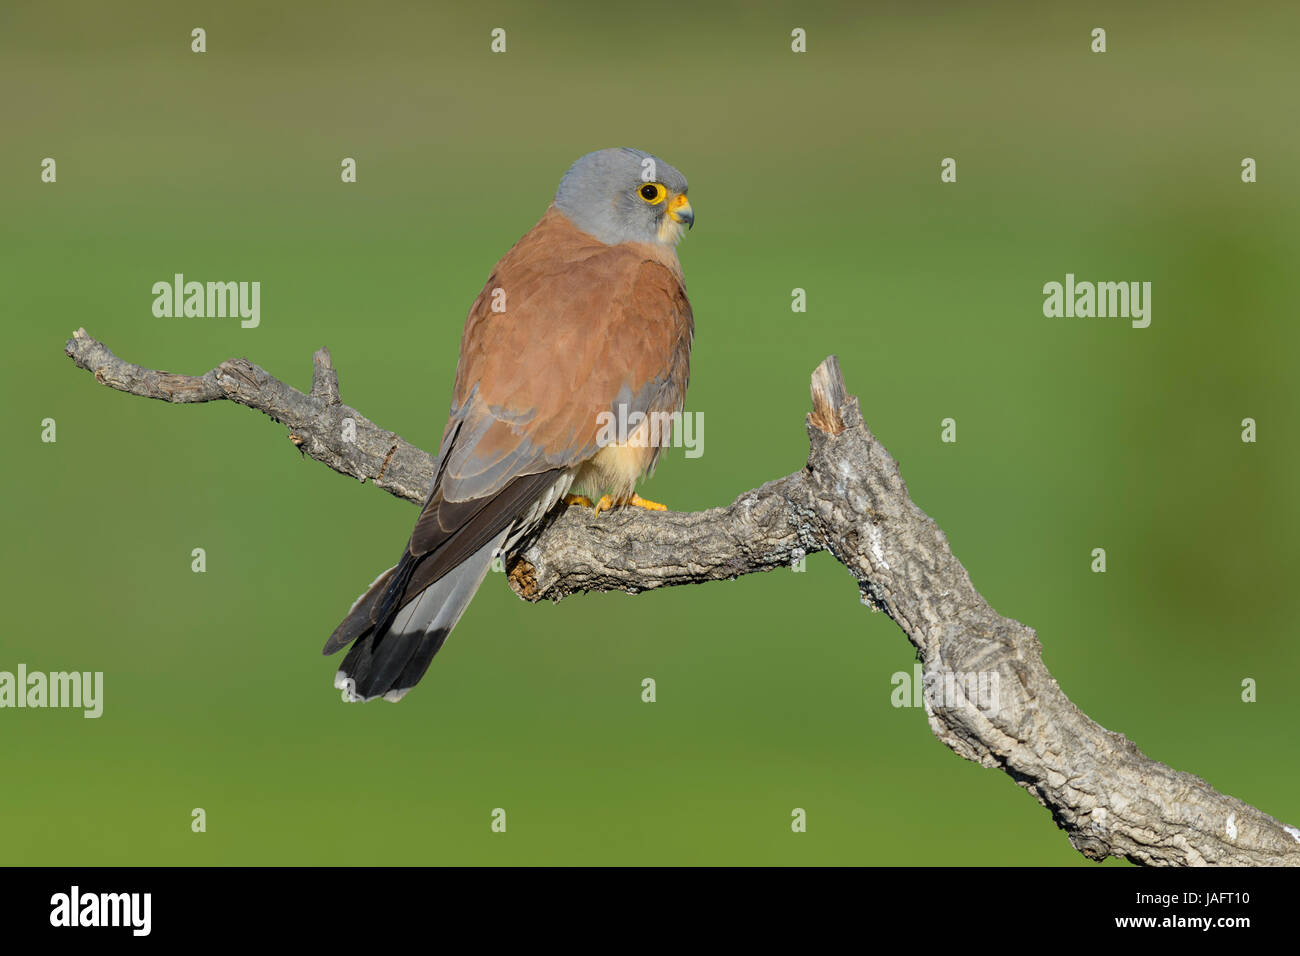 Faucon crécerellette (Falco naumanni), adulte, homme, sur la branche, l'Estrémadure, Espagne Banque D'Images